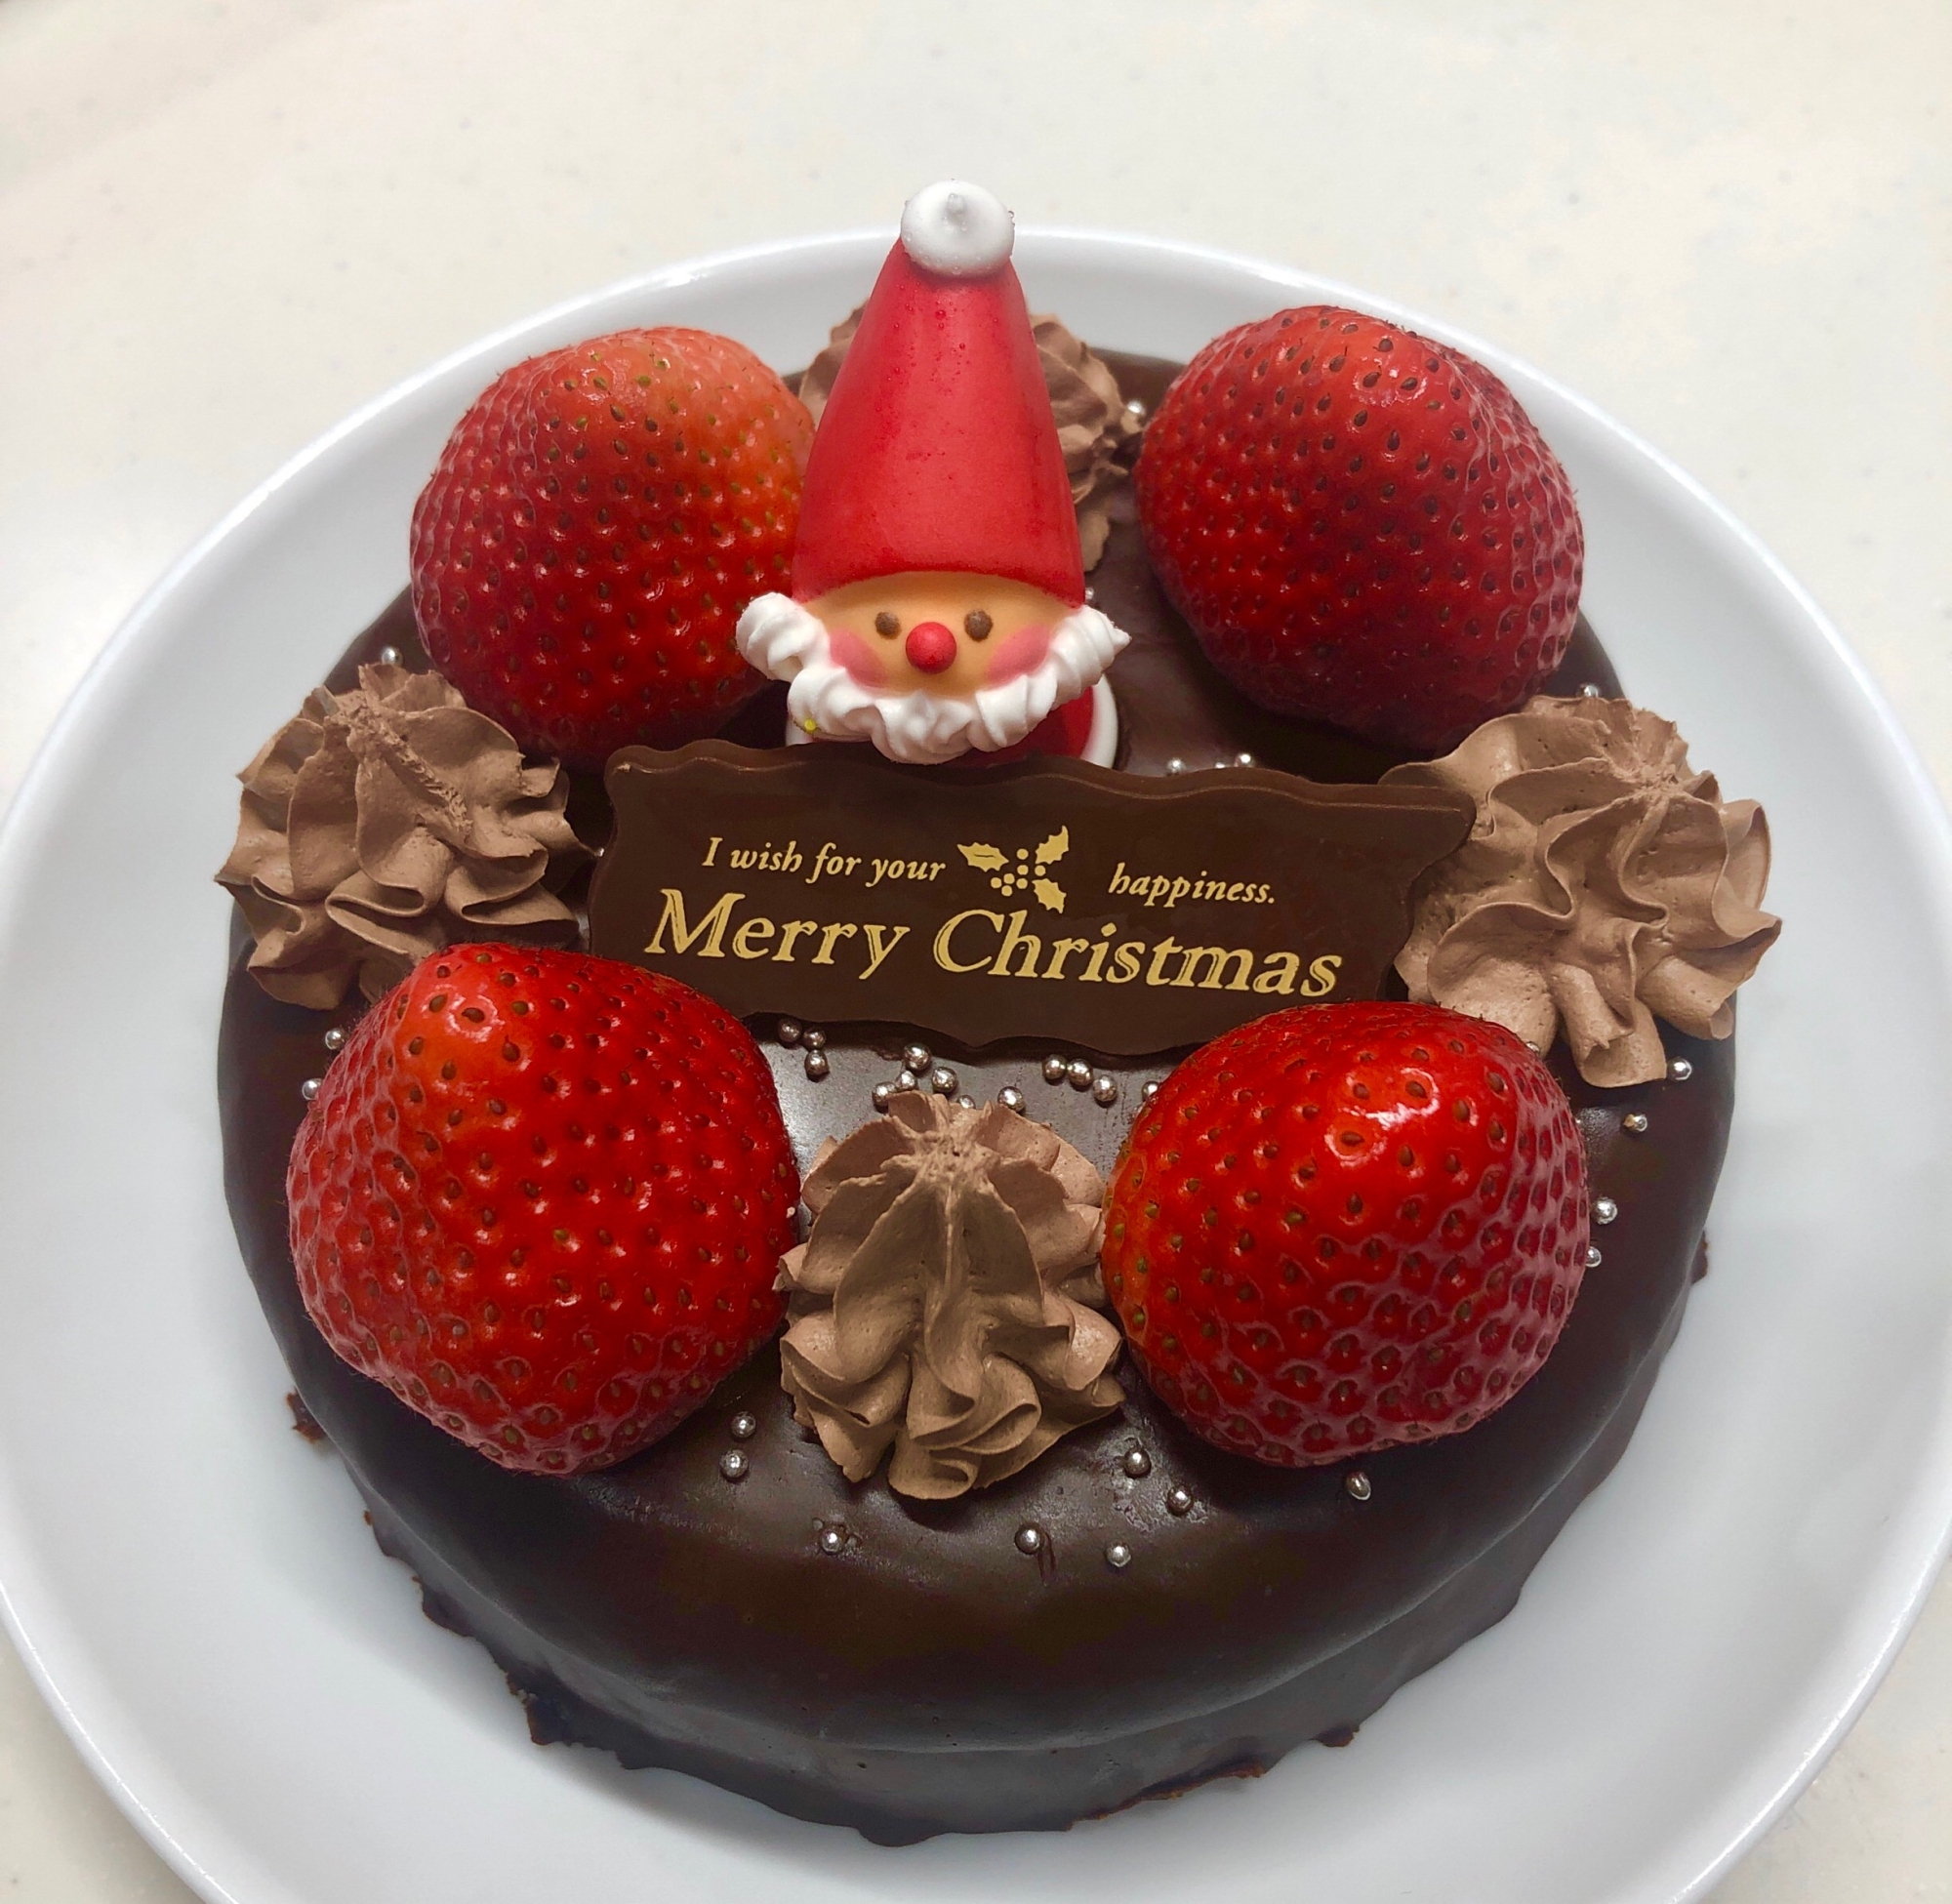 ザッハトルテ風・クリスマスケーキ